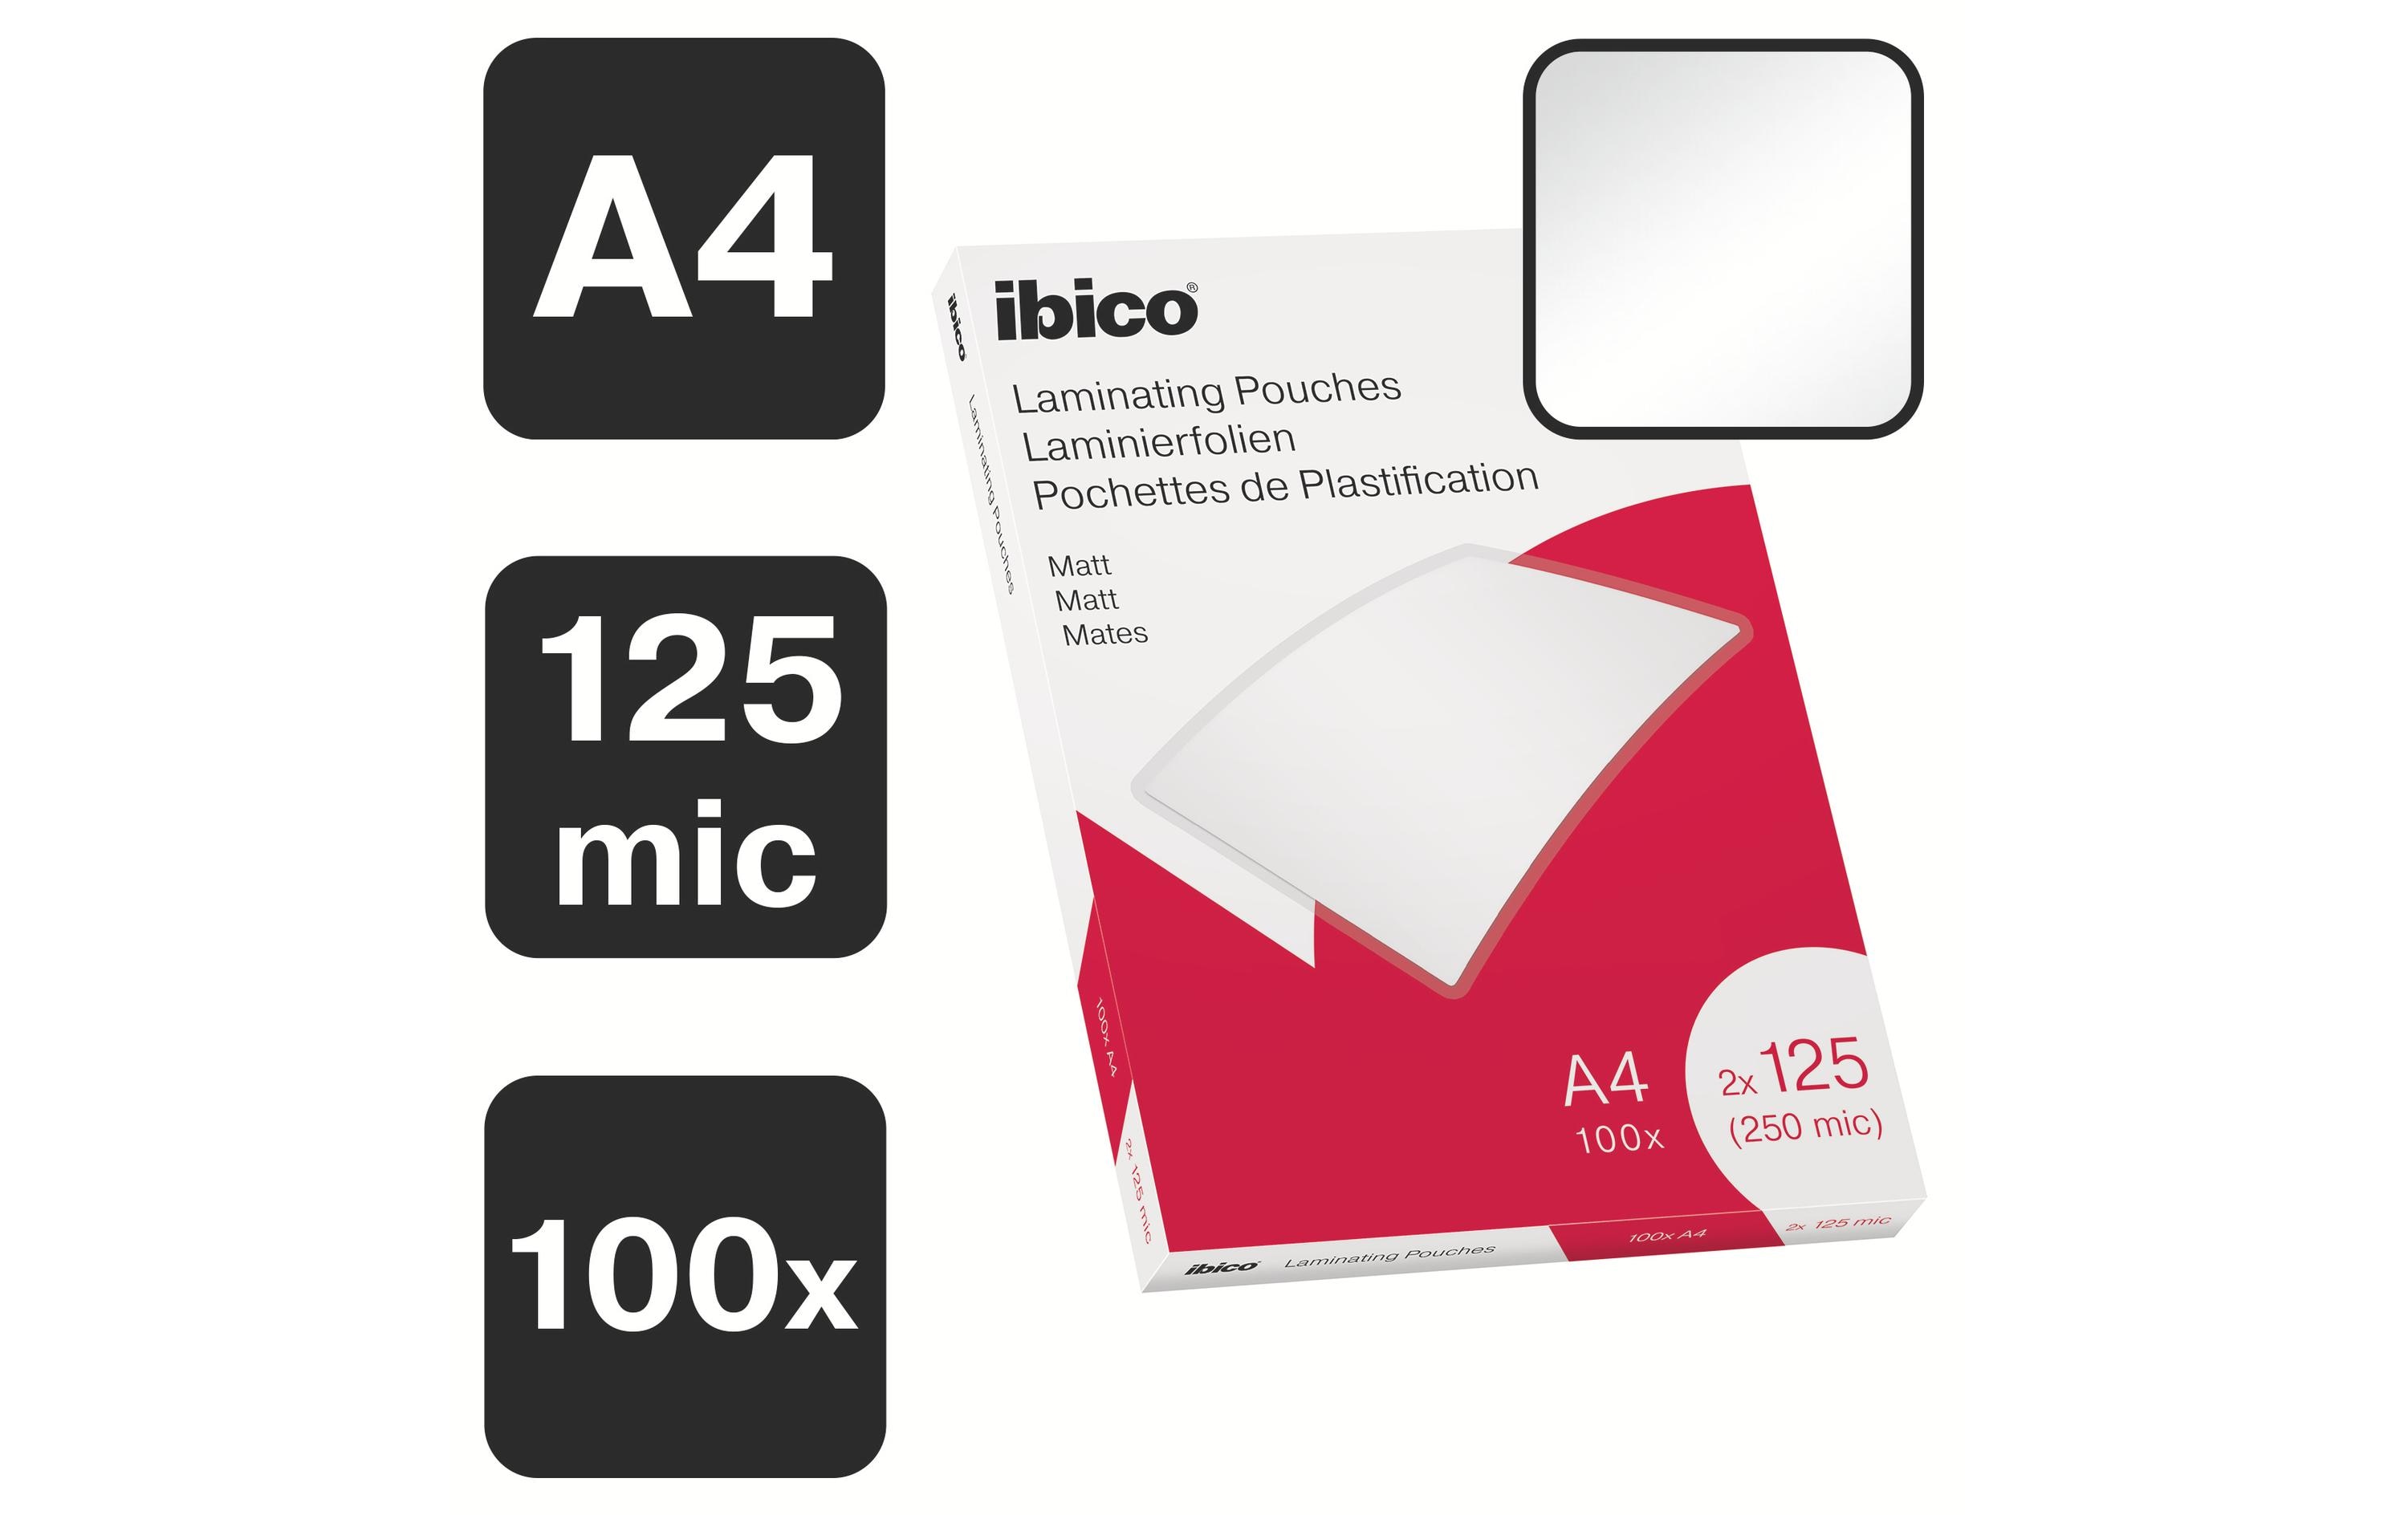 Ibico Laminierfolie A4, 125 µm, 100 Stück, Matt